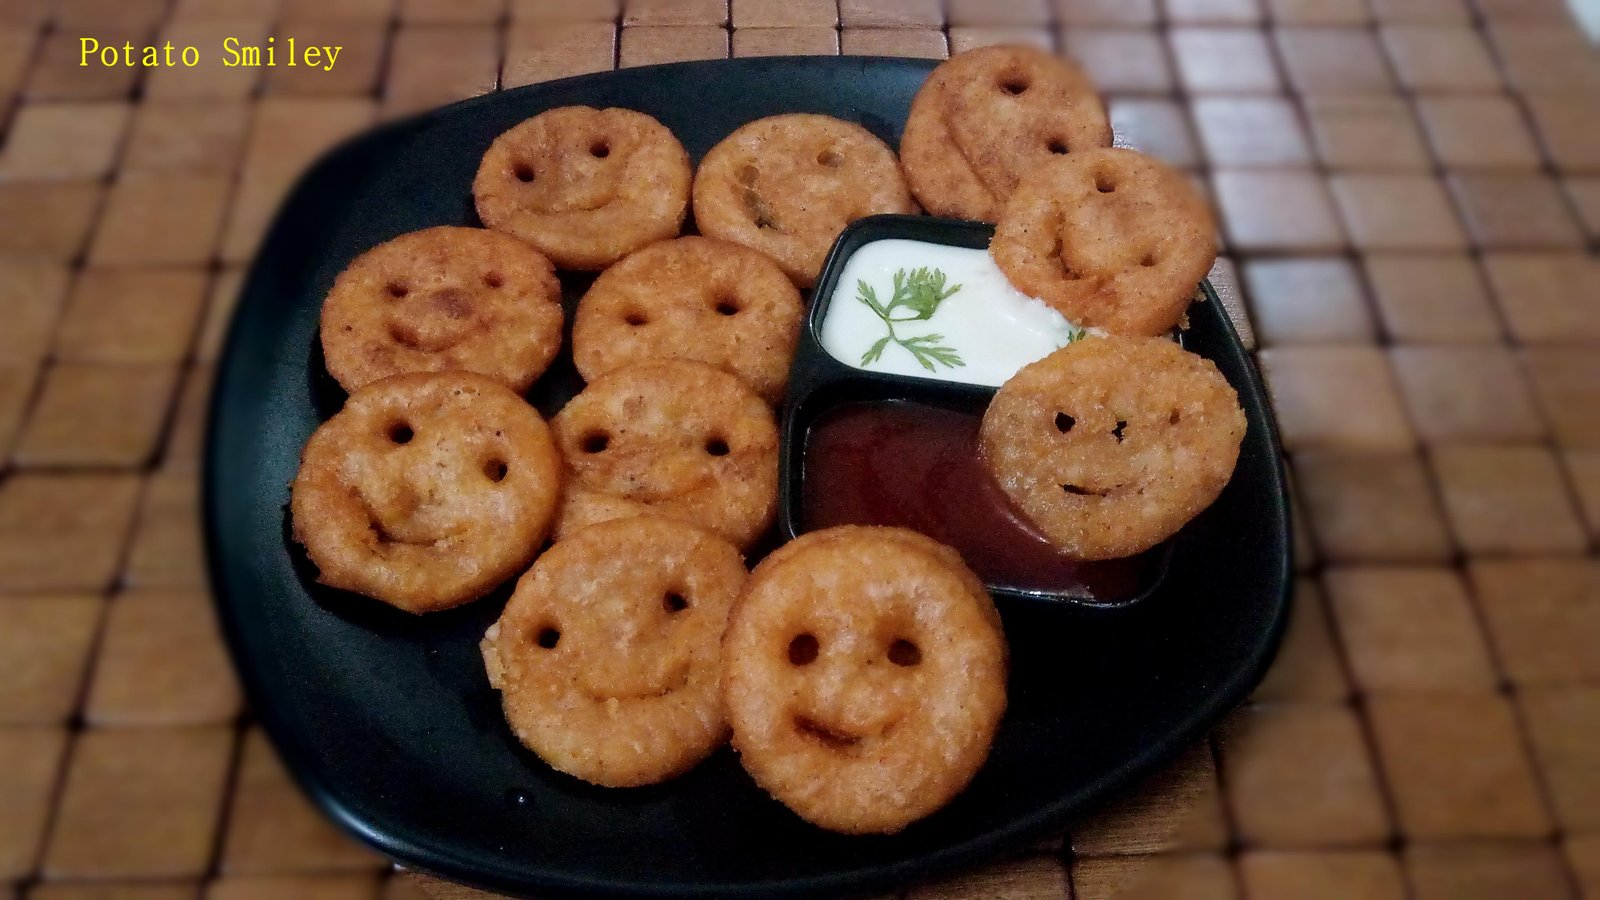 Potato Smiley